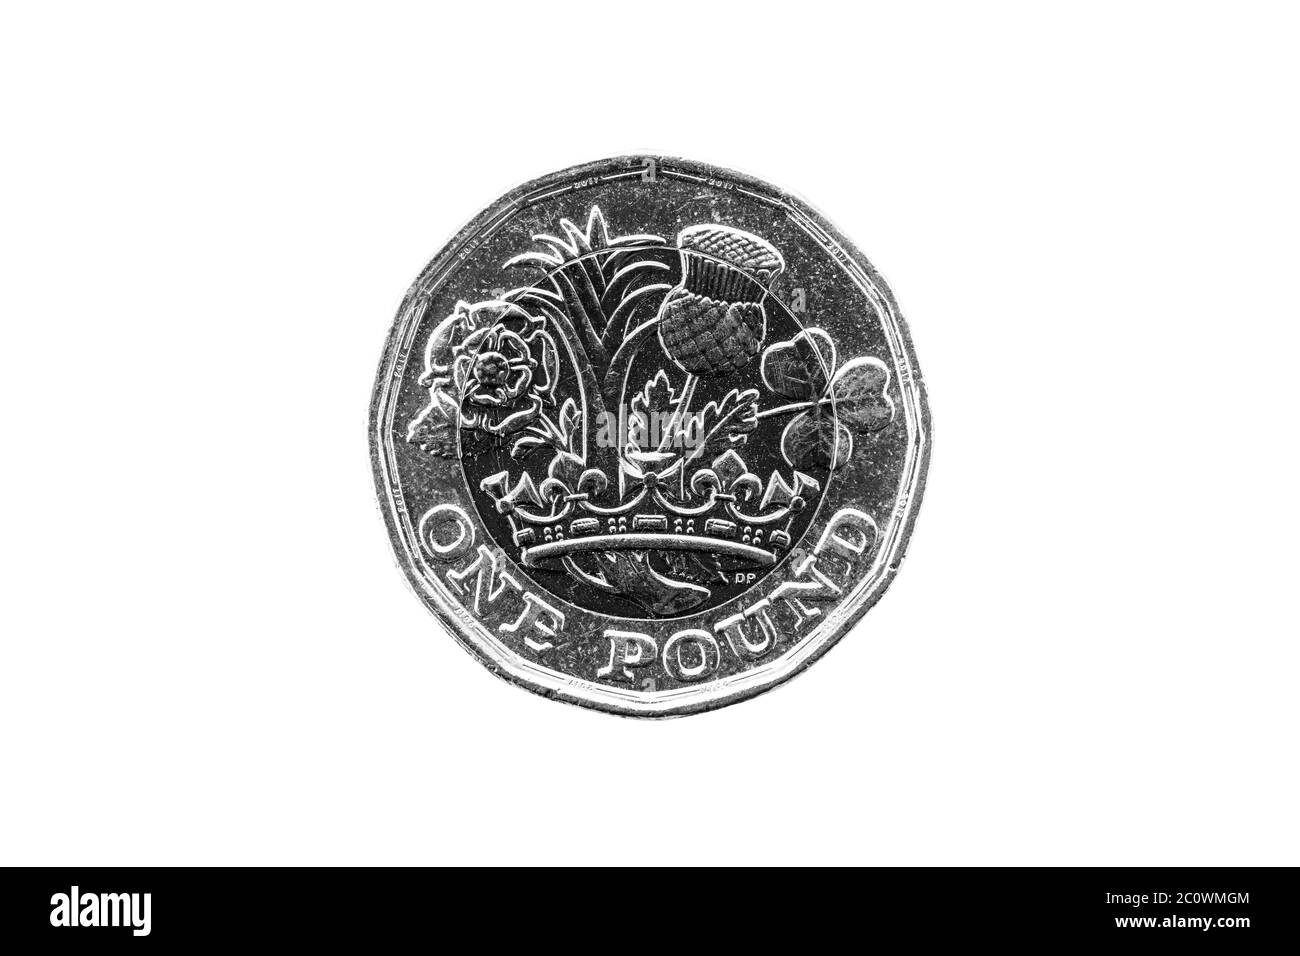 Una moneta da una libbra di Inghilterra UK introdotta nel 2017 che mostra emblemi di ciascuna delle nazioni tagliate e isolate su uno sfondo bianco nero e bianco Foto Stock